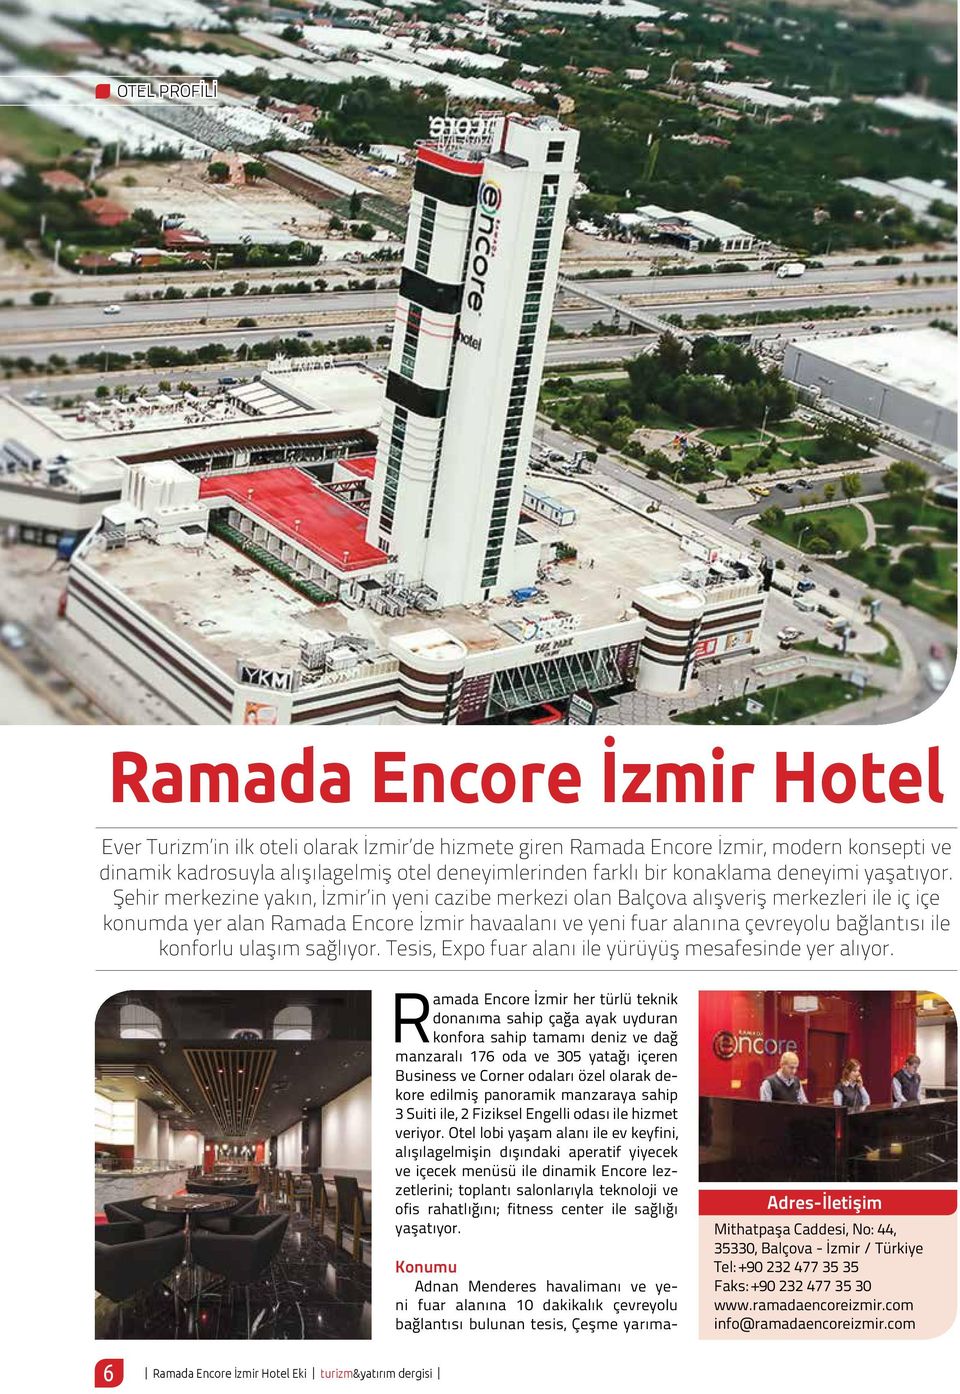 Şehir merkezine yakın, İzmir in yeni cazibe merkezi olan Balçova alışveriş merkezleri ile iç içe konumda yer alan Ramada Encore İzmir havaalanı ve yeni fuar alanına çevreyolu bağlantısı ile konforlu